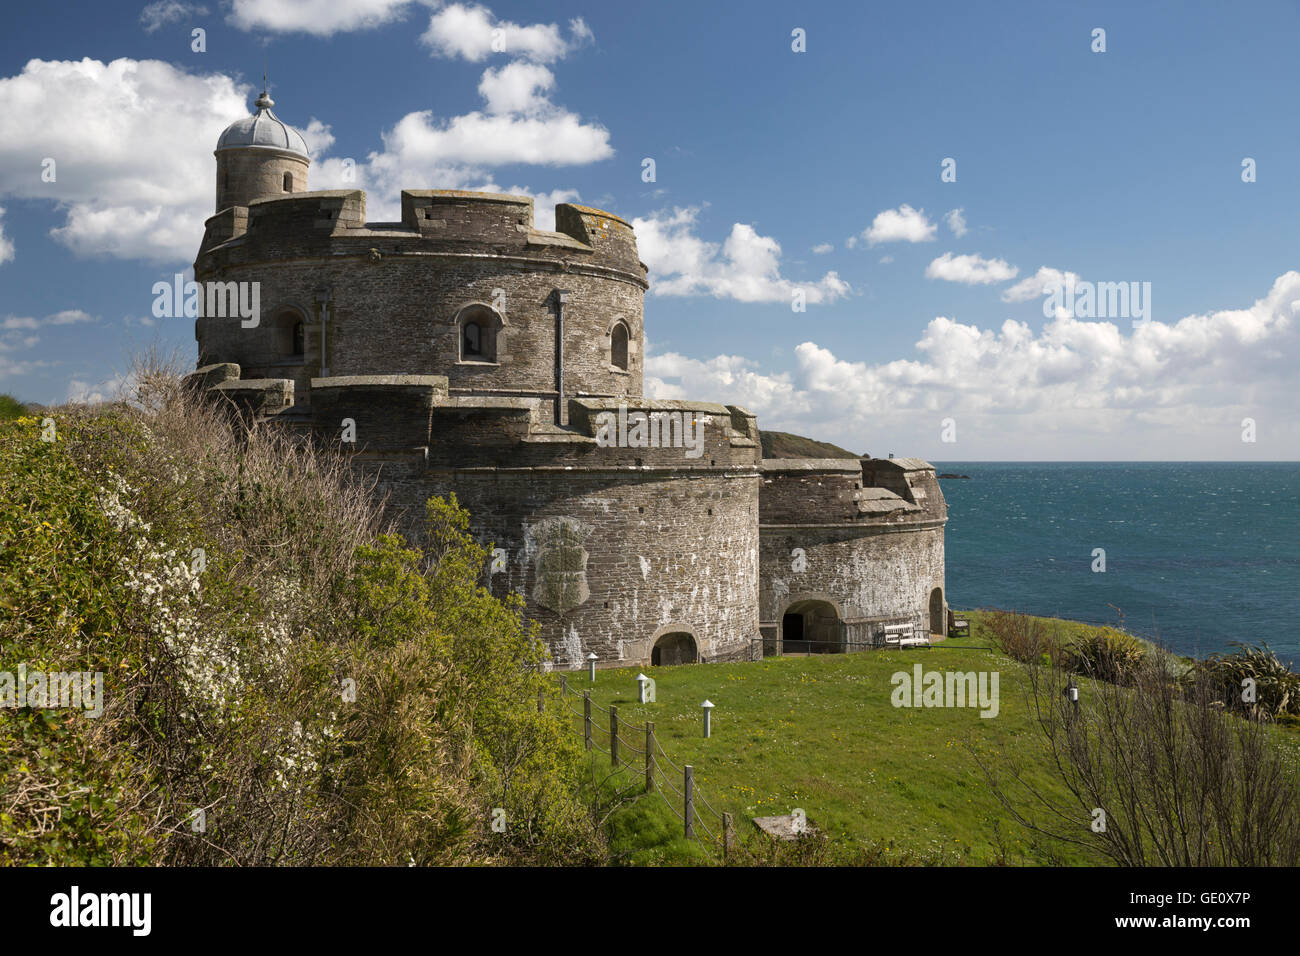 St Mawes Castle et le littoral, St Mawes, Cornouailles, Angleterre, Royaume-Uni, Europe Banque D'Images